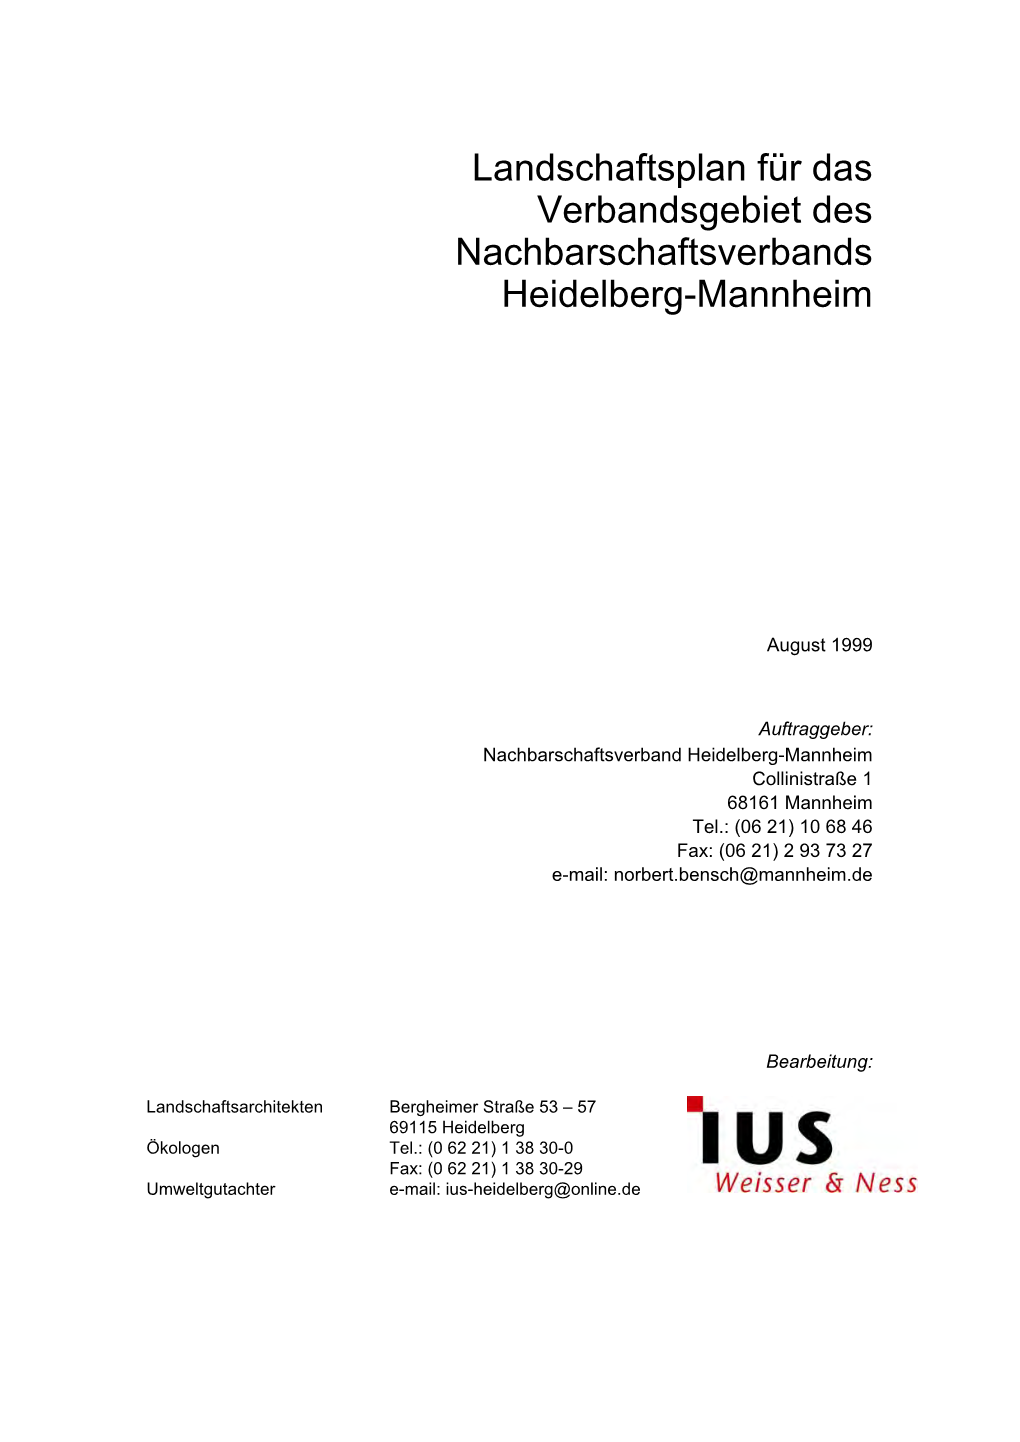 Textteil Zum Landschaftsplan-PDF